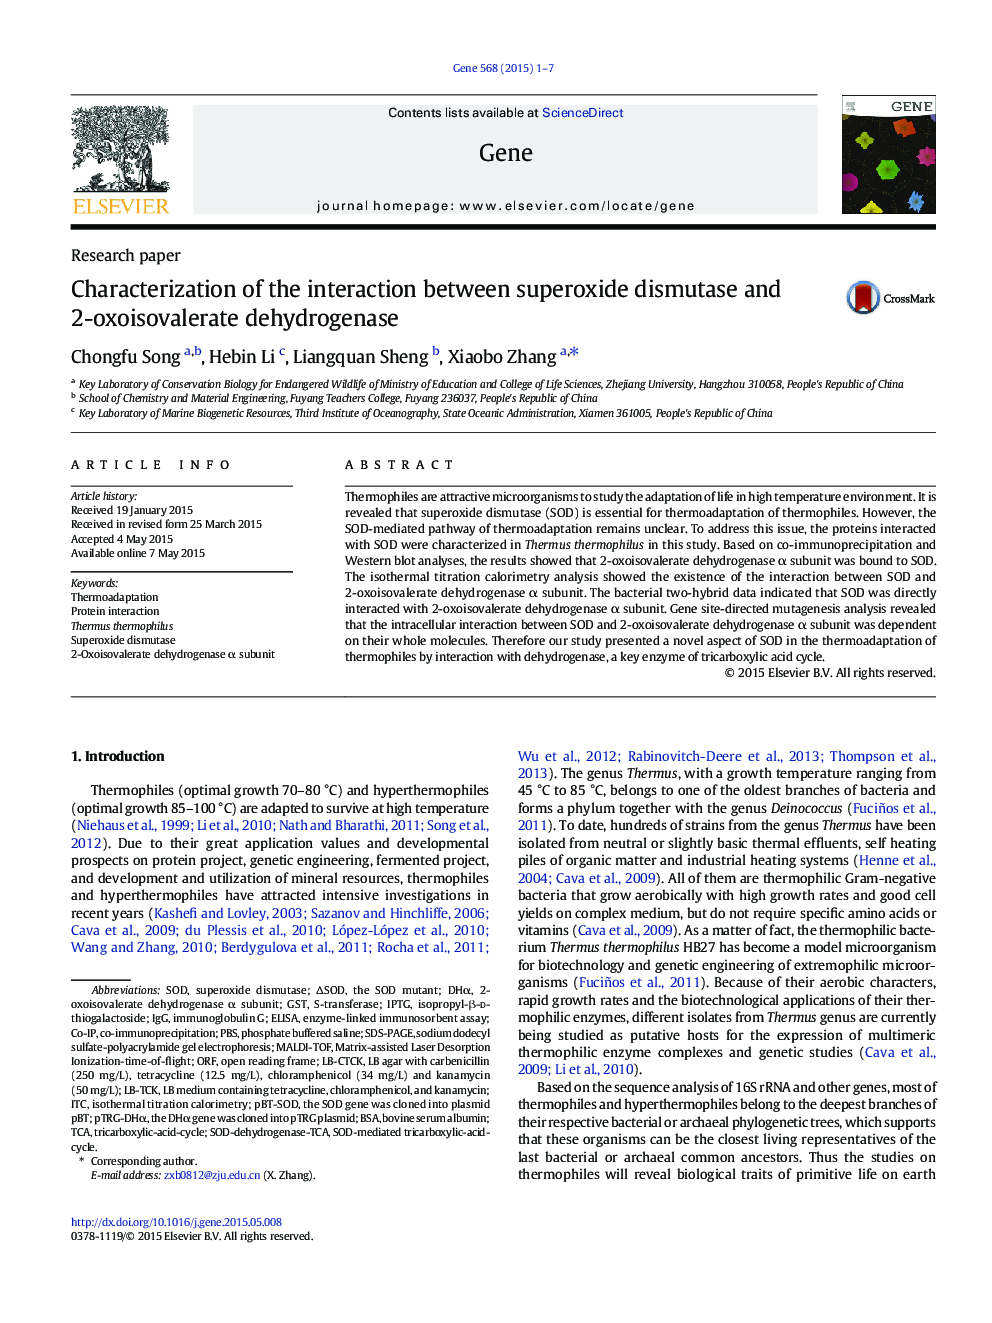 تعیین تعامل بین سوپراکسید دیسموتاز و 2-اکسوئیولولد دهیدروژناز 